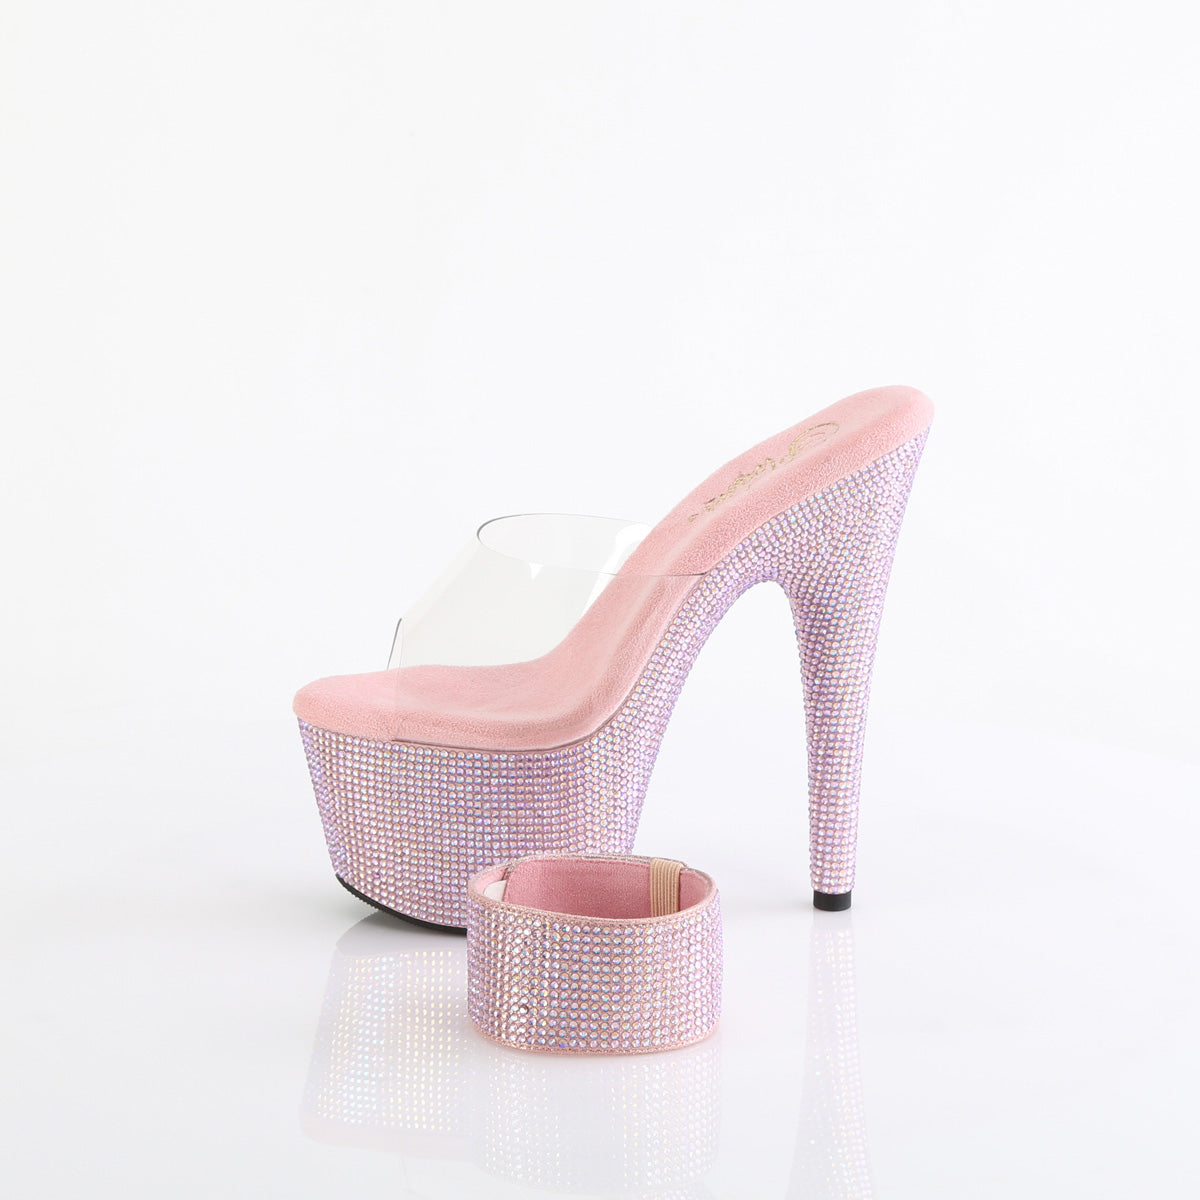 BEJEWELED-712RS Pleaser Sexy Footwear Pink Bling Heels